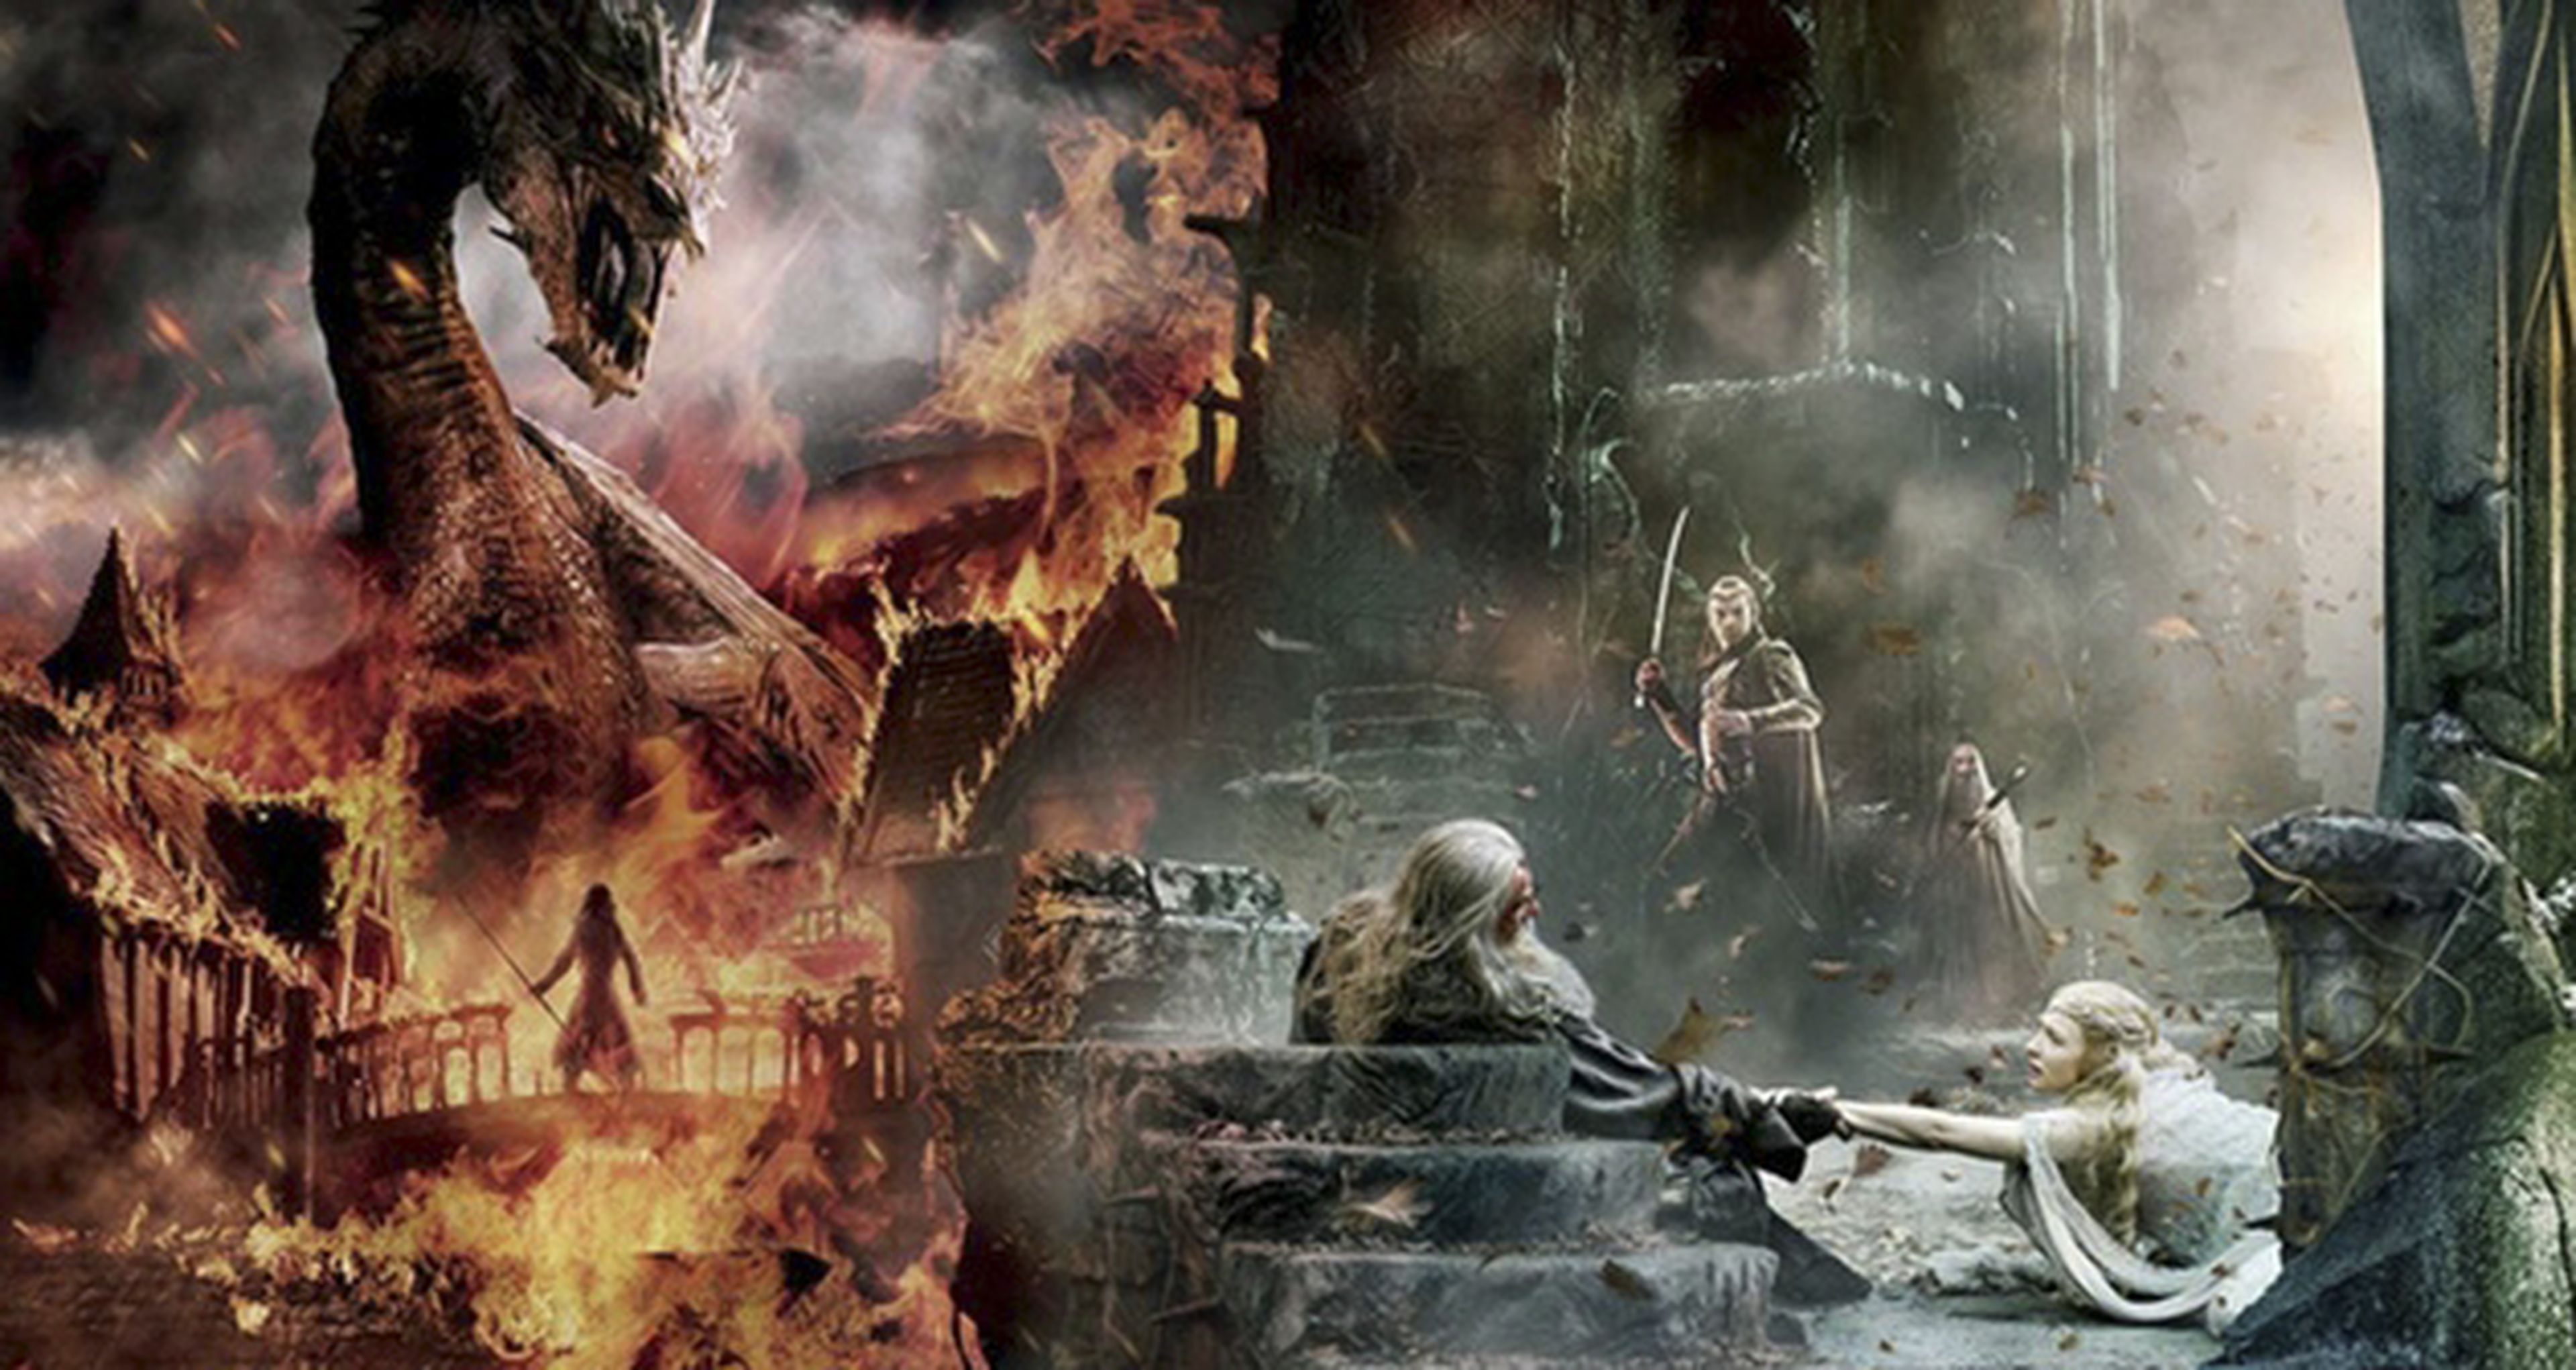 Impresionante cartel promocional de El hobbit: la batalla de los cinco ejércitos